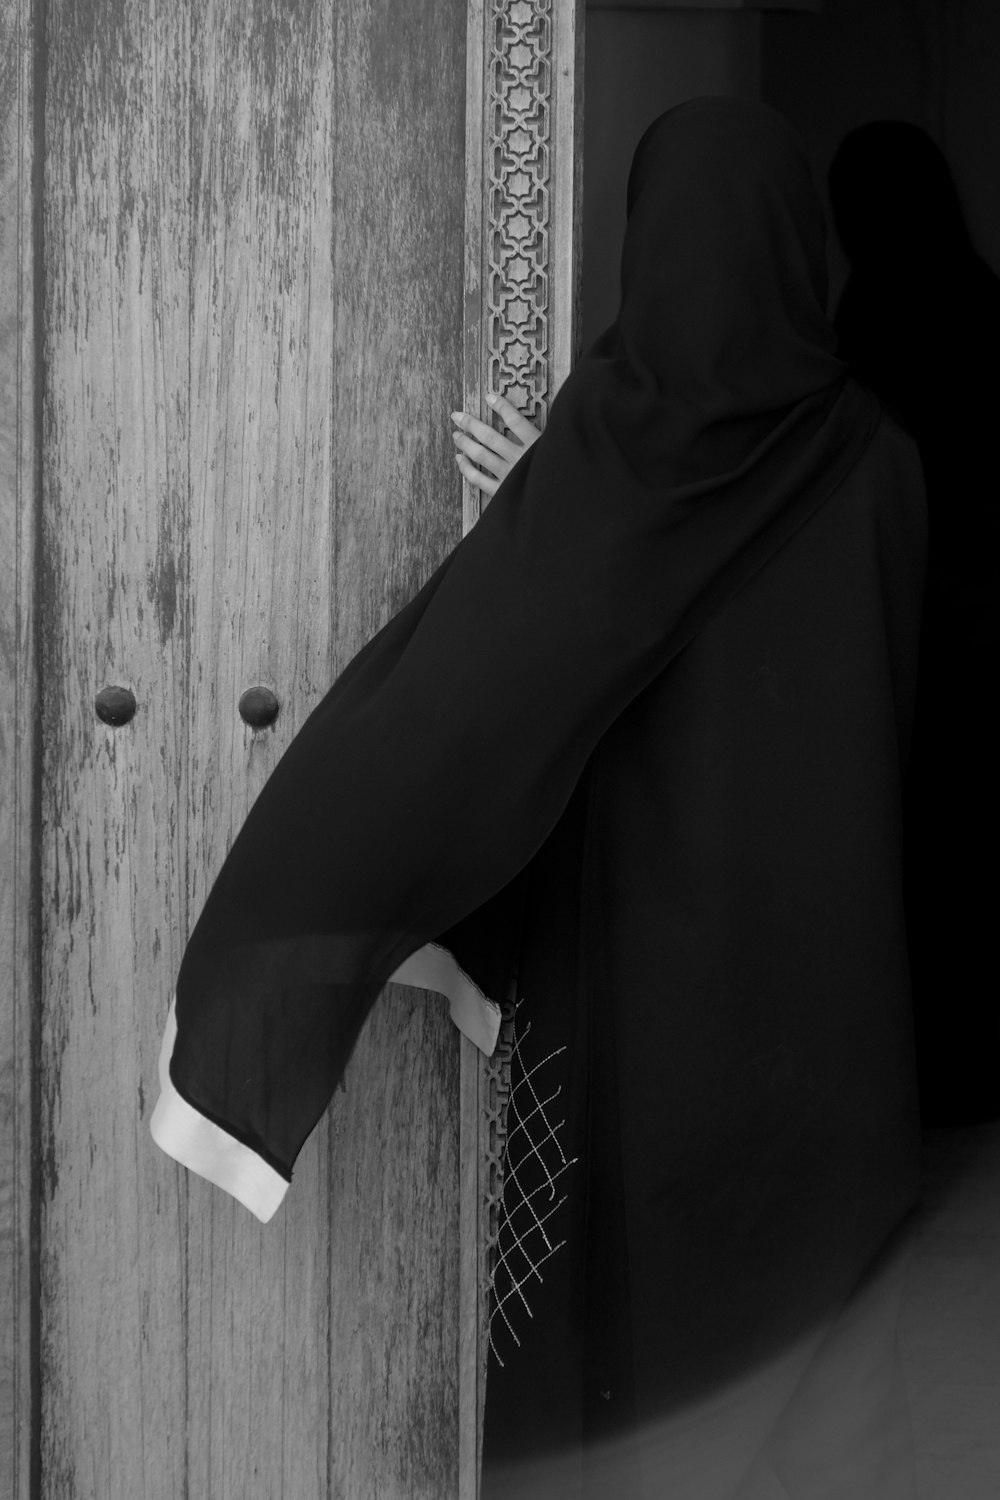 Eine Person in einem schwarzen Gewand öffnet eine Tür